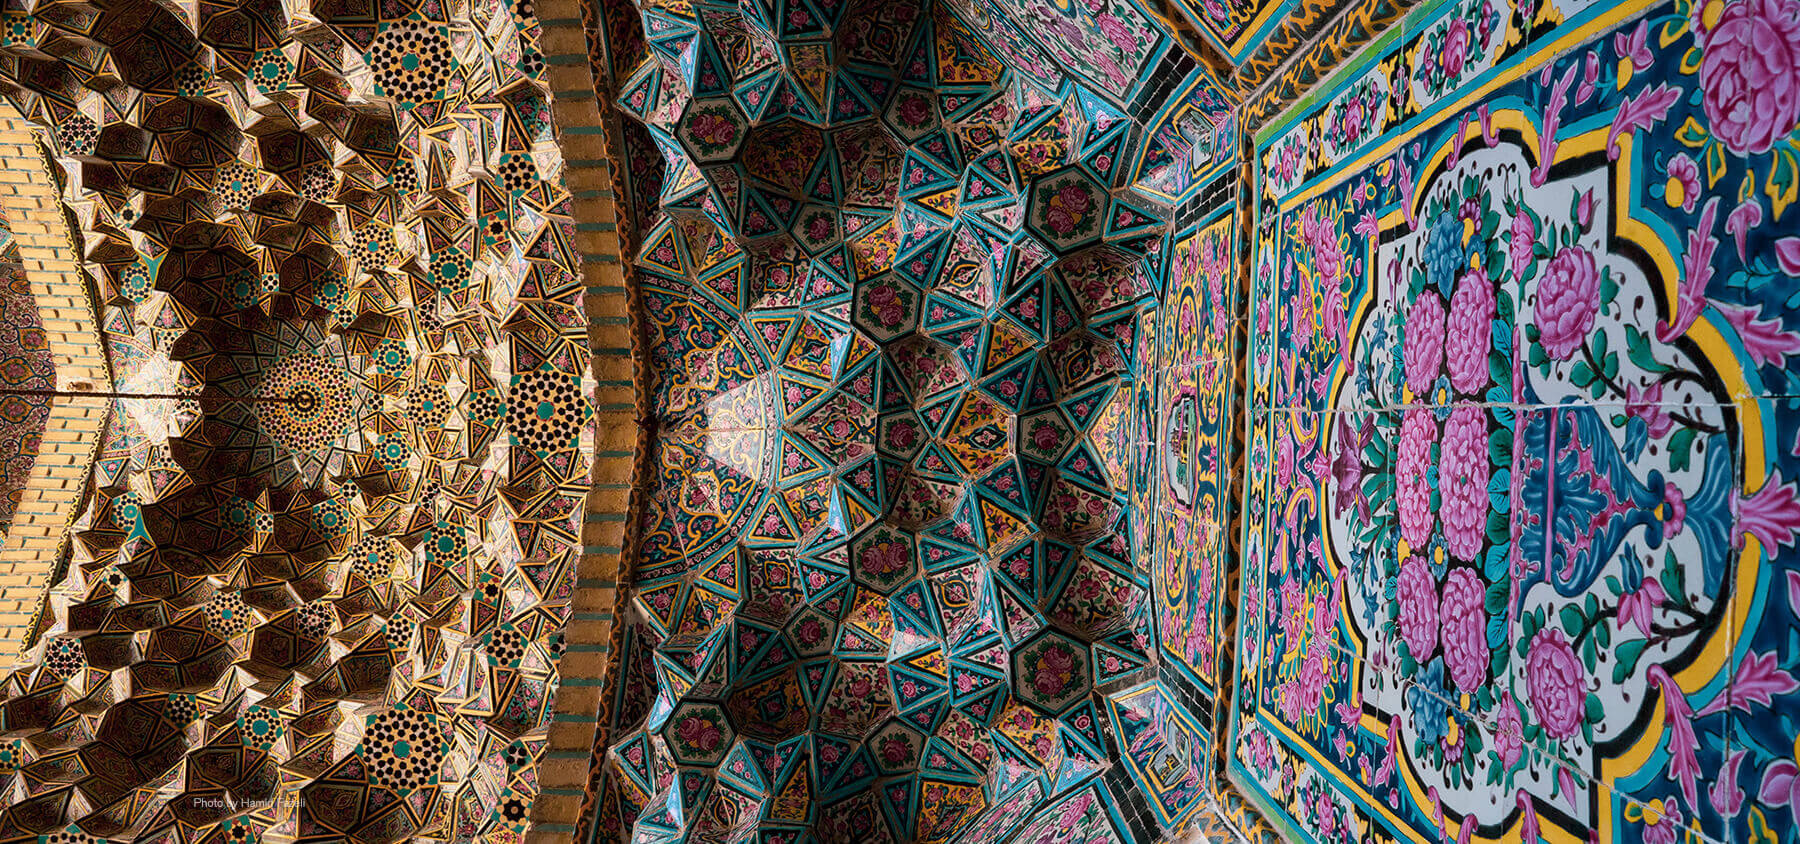 Nasirolmolk_Mosque_Shiraz